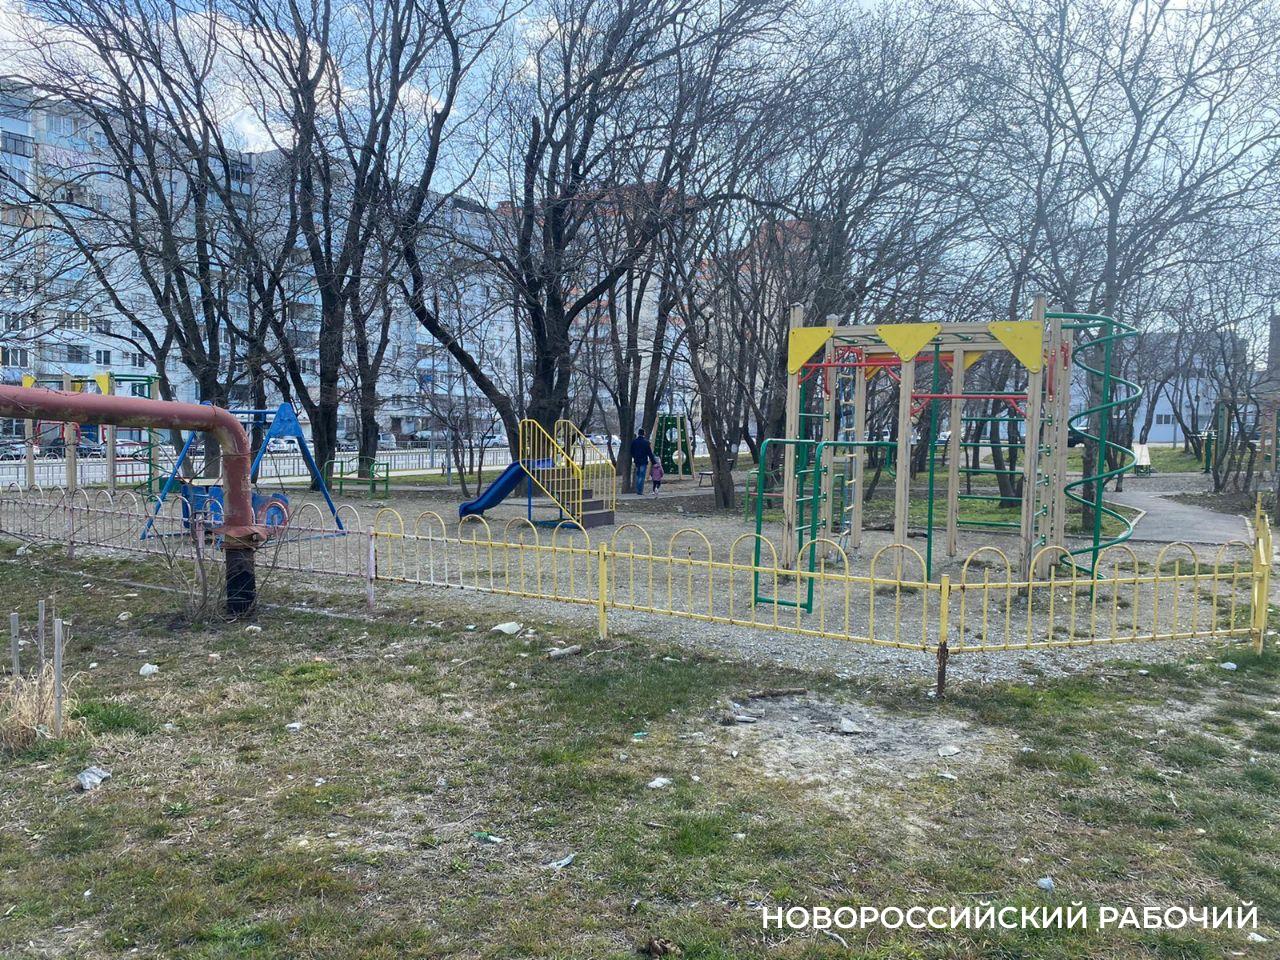 Жители Новороссийска будут выбирать сквер для благоустройства. А что с теми, кого выбрали раньше?